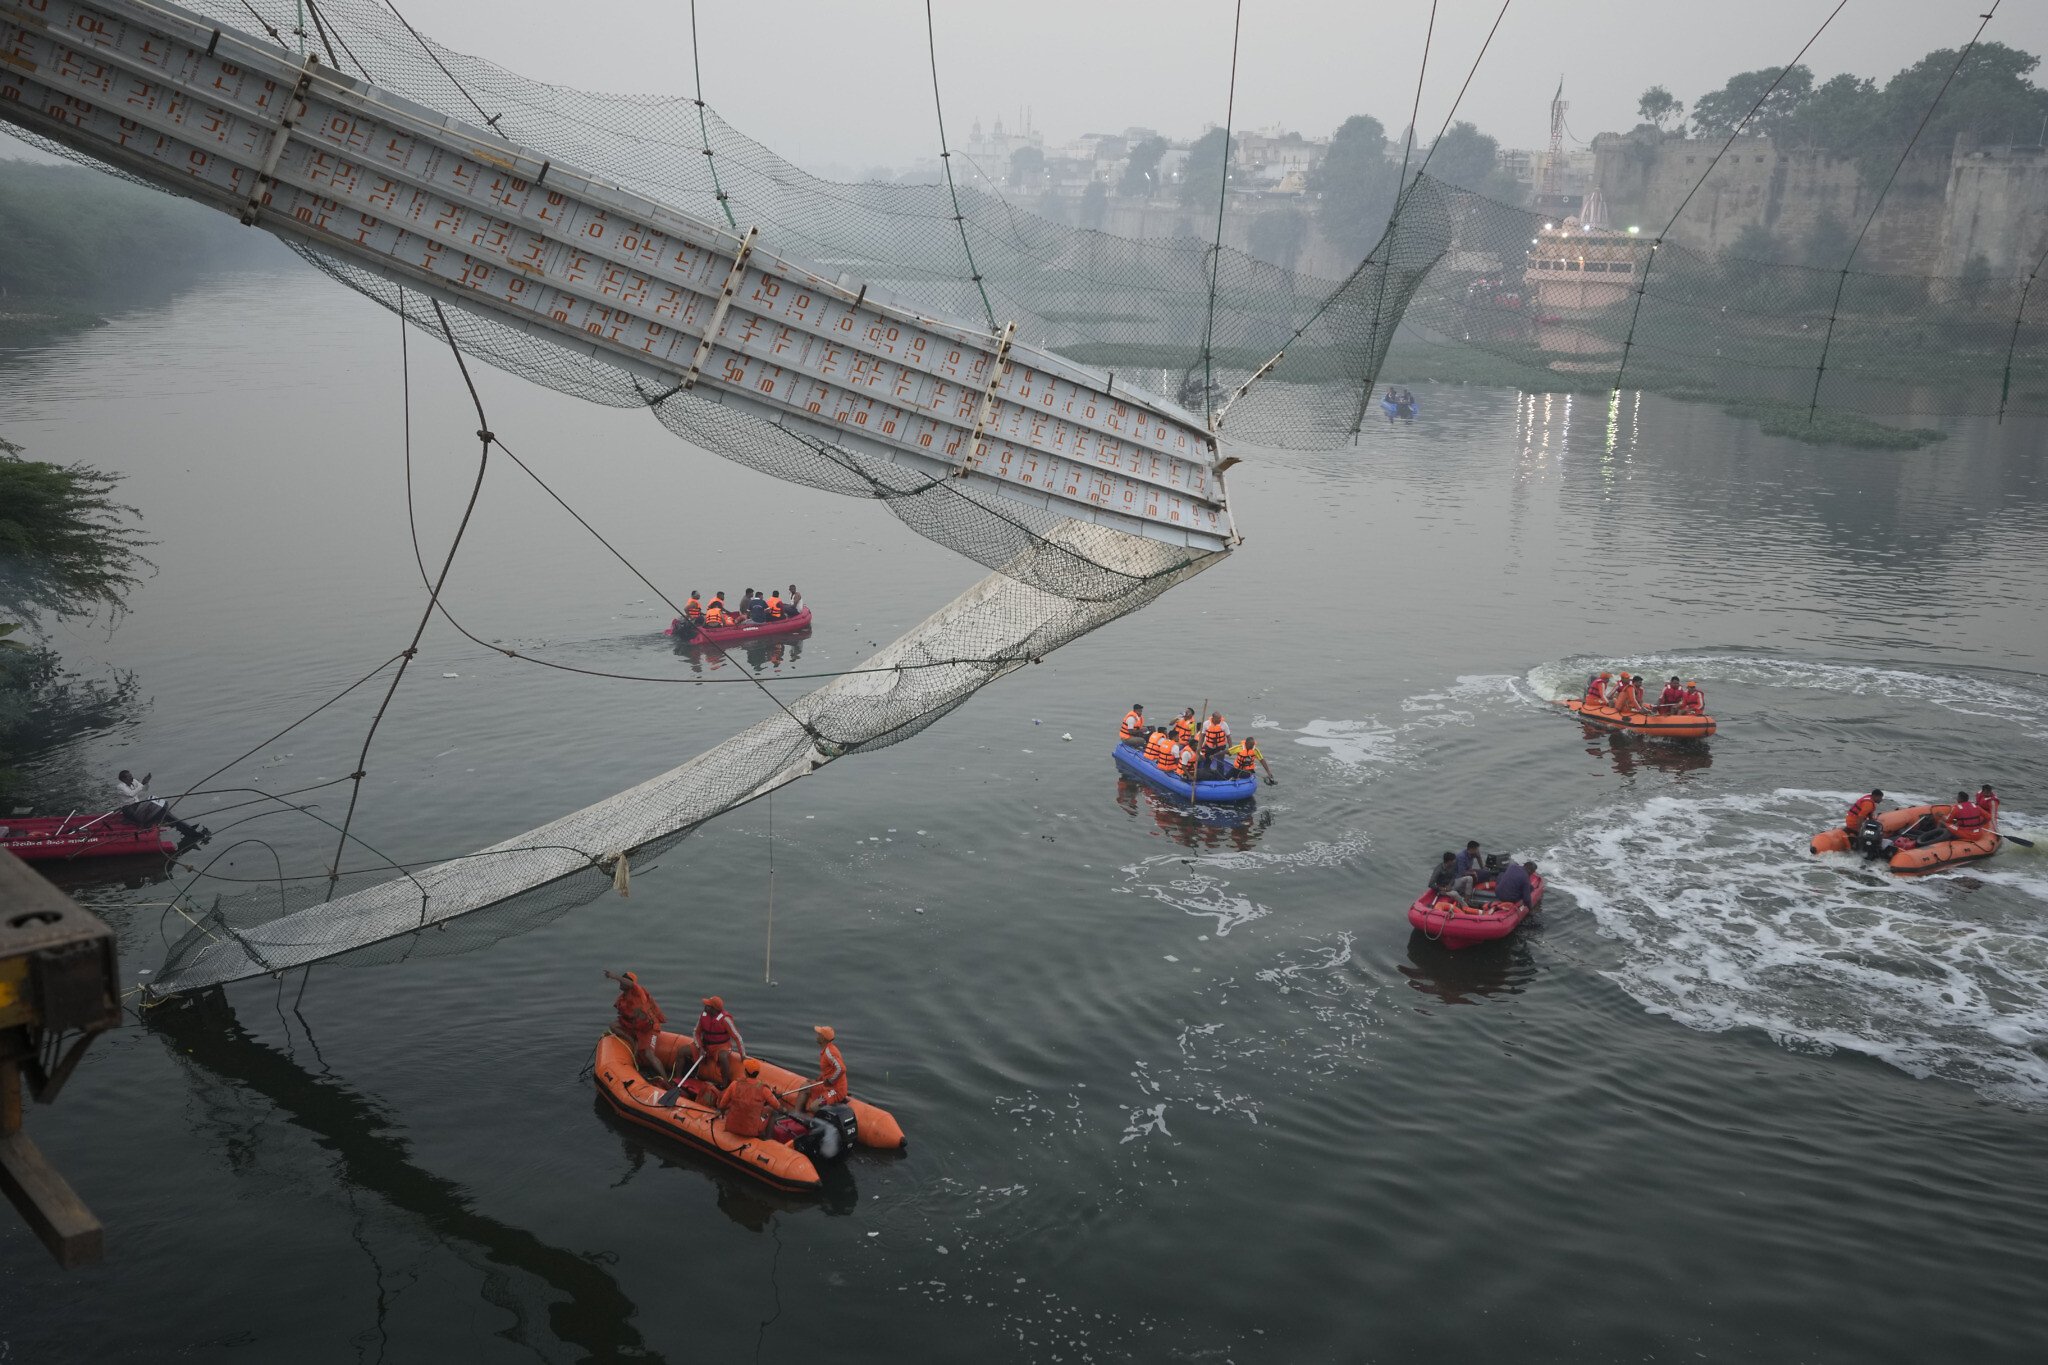 Ινδία γέφυρα – κατάρρευση: Εκατόμβη νεκρών, δύτες ψάχνουν για επιζώντες